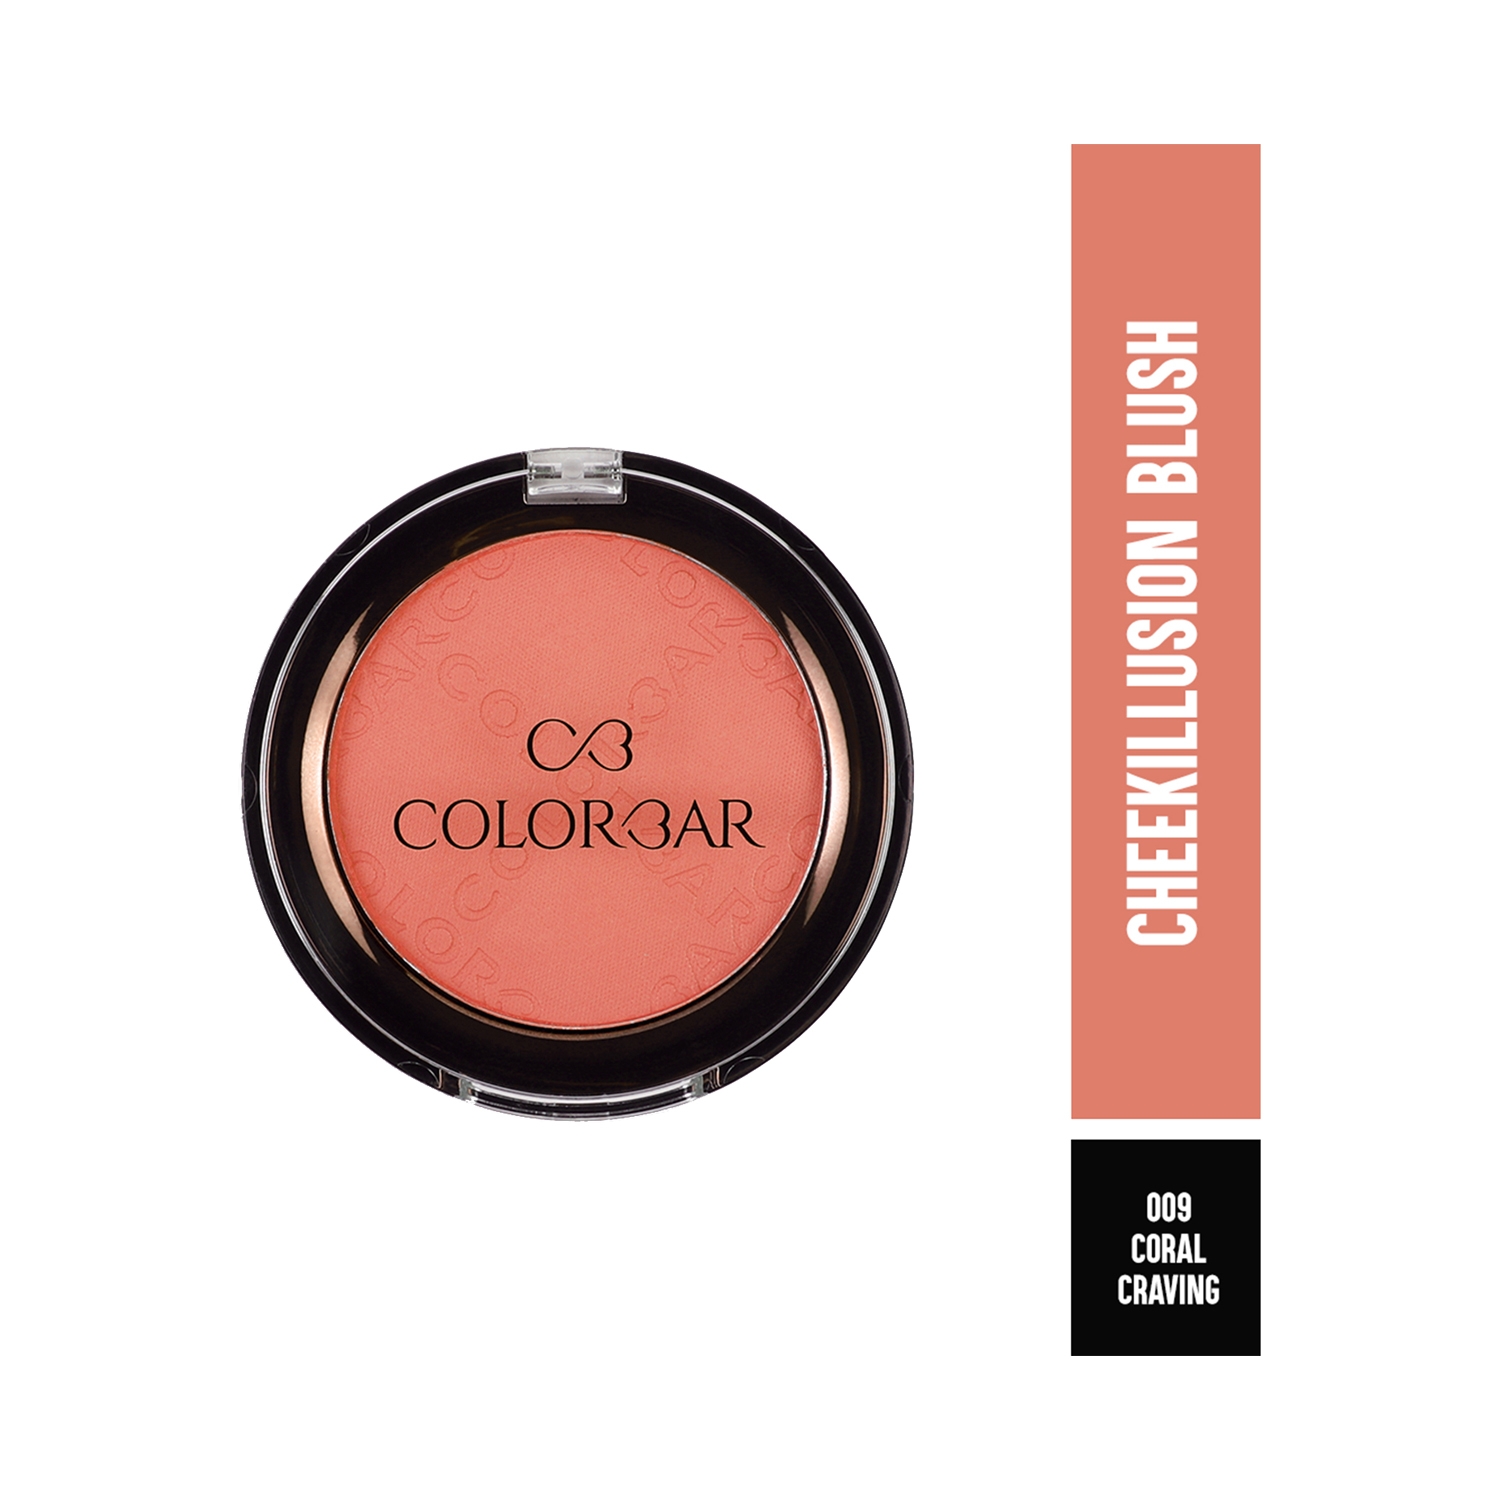 Colorbar | Colorbar Cheekillusion Blush New - 009 Coral Craving (4g)